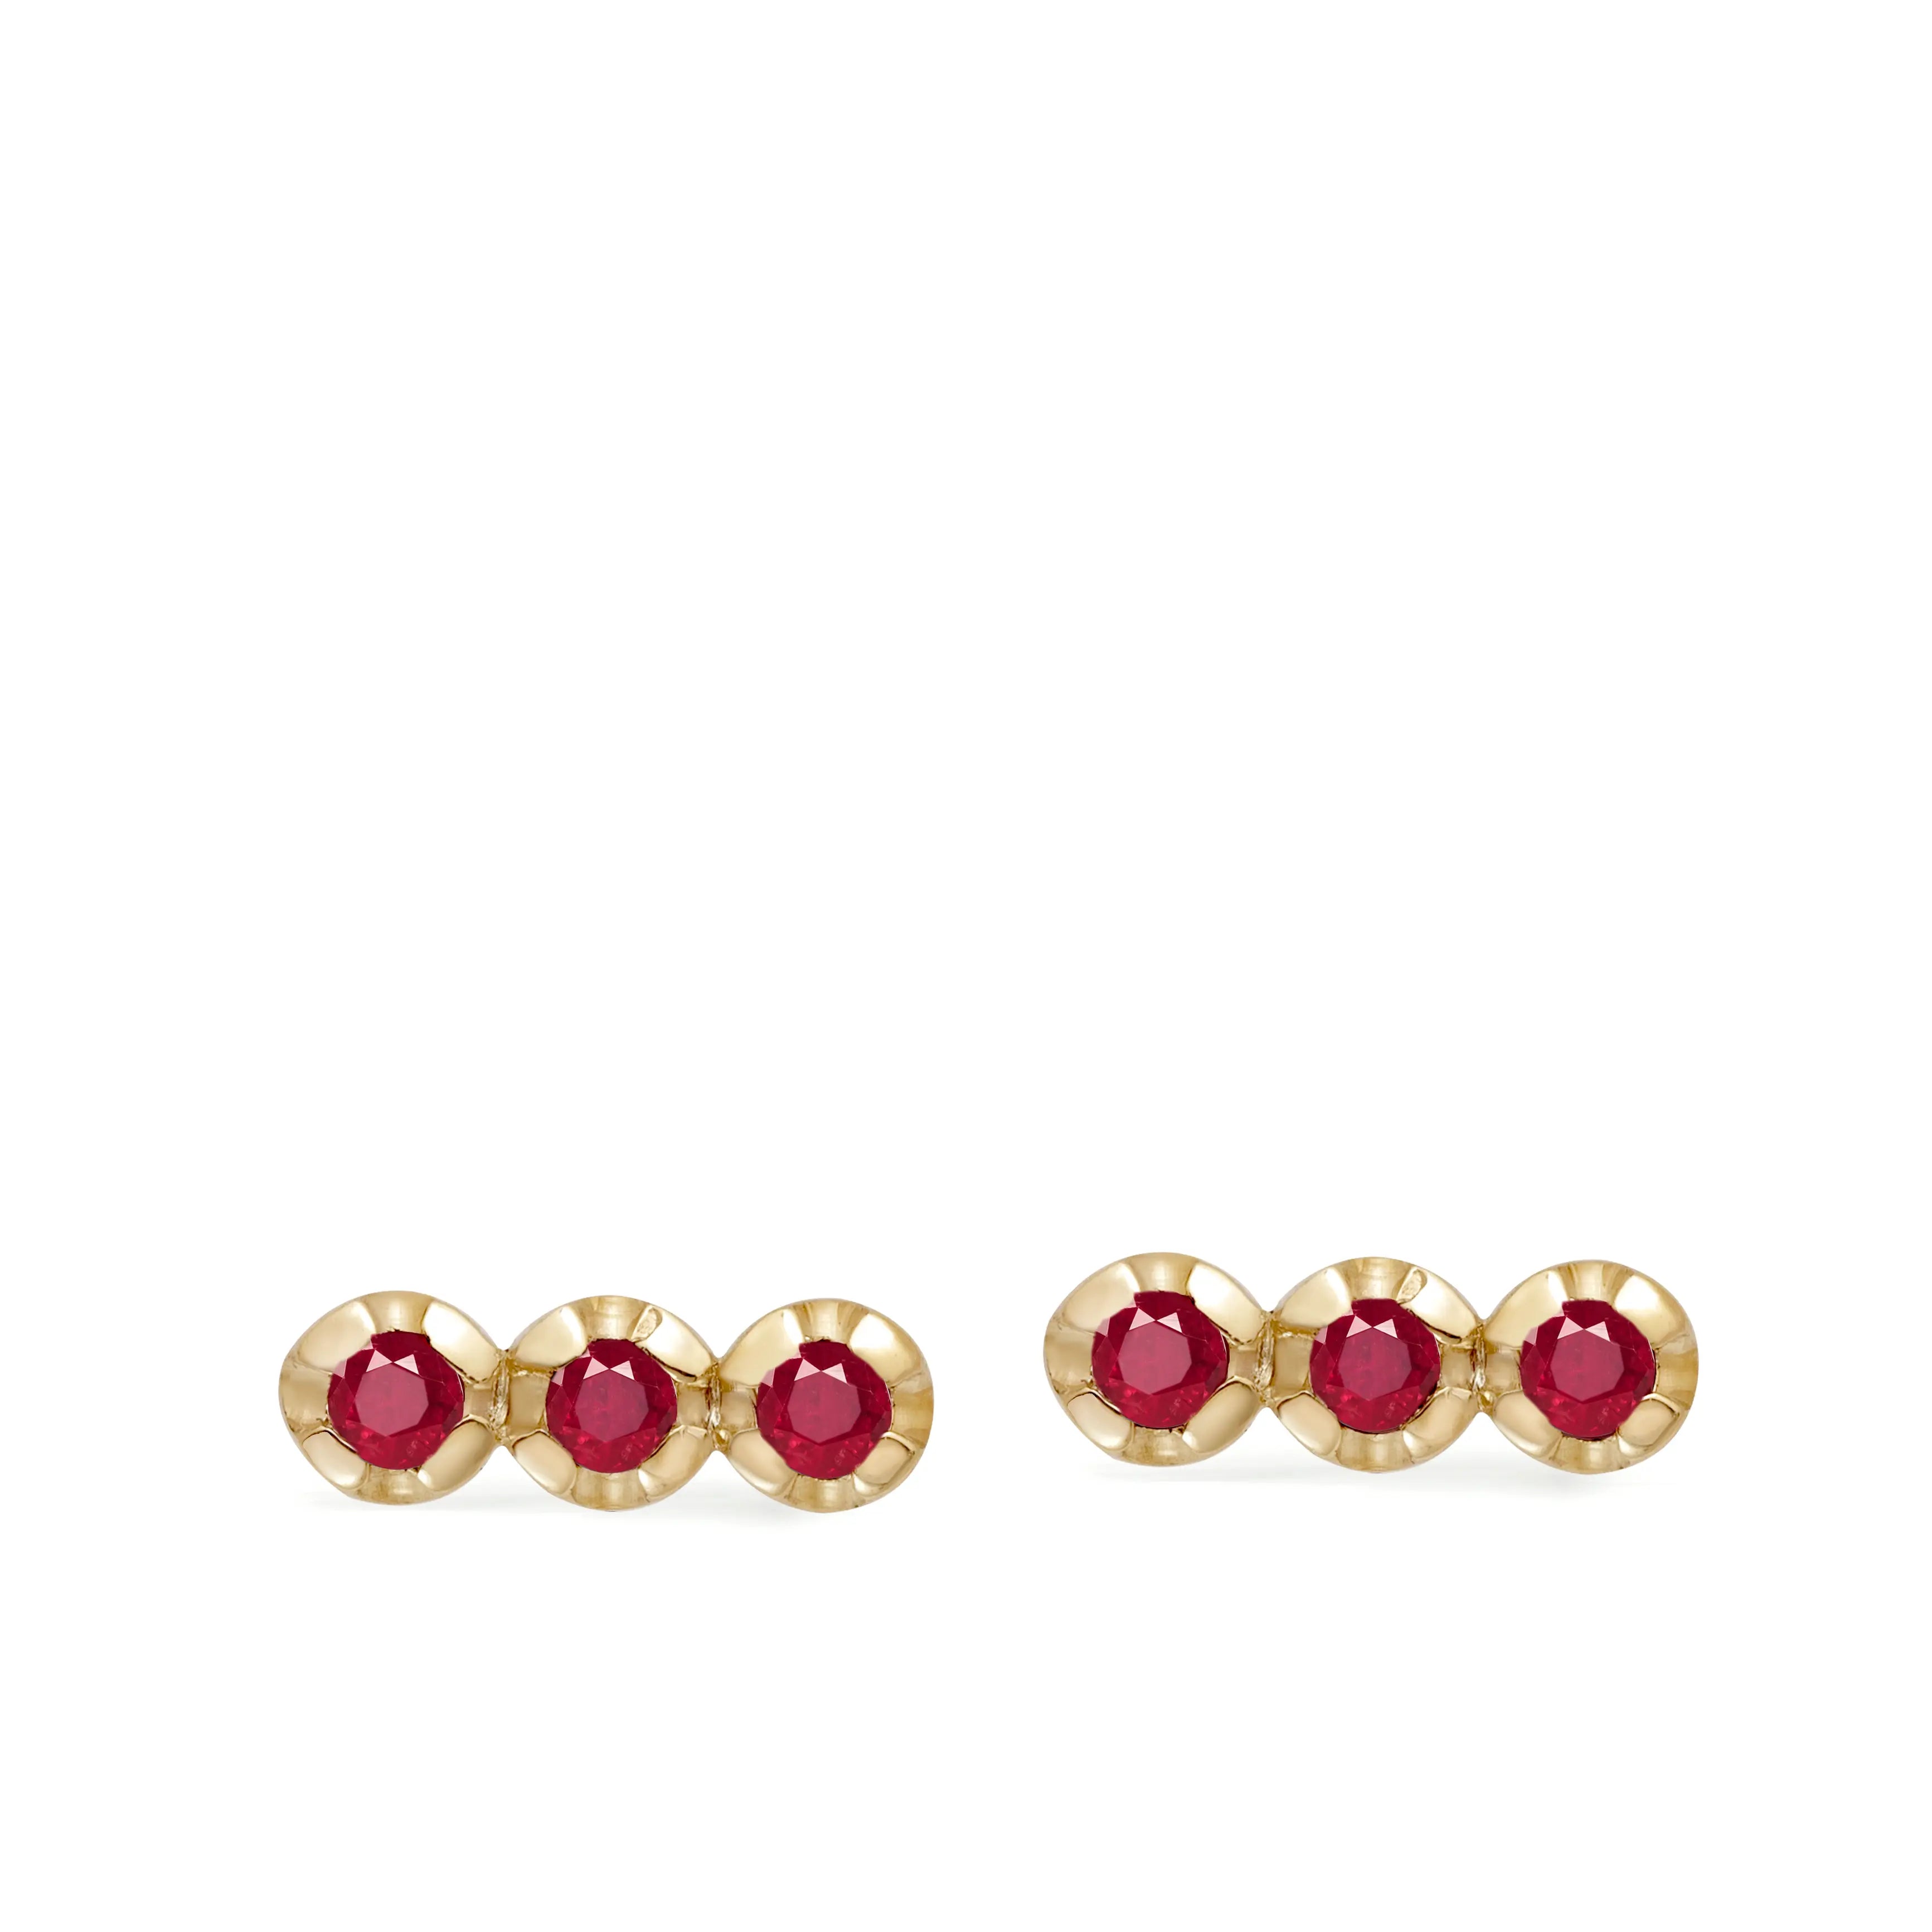 3 Ruby Stud Earrings 14K Gold for Women by Kyklos